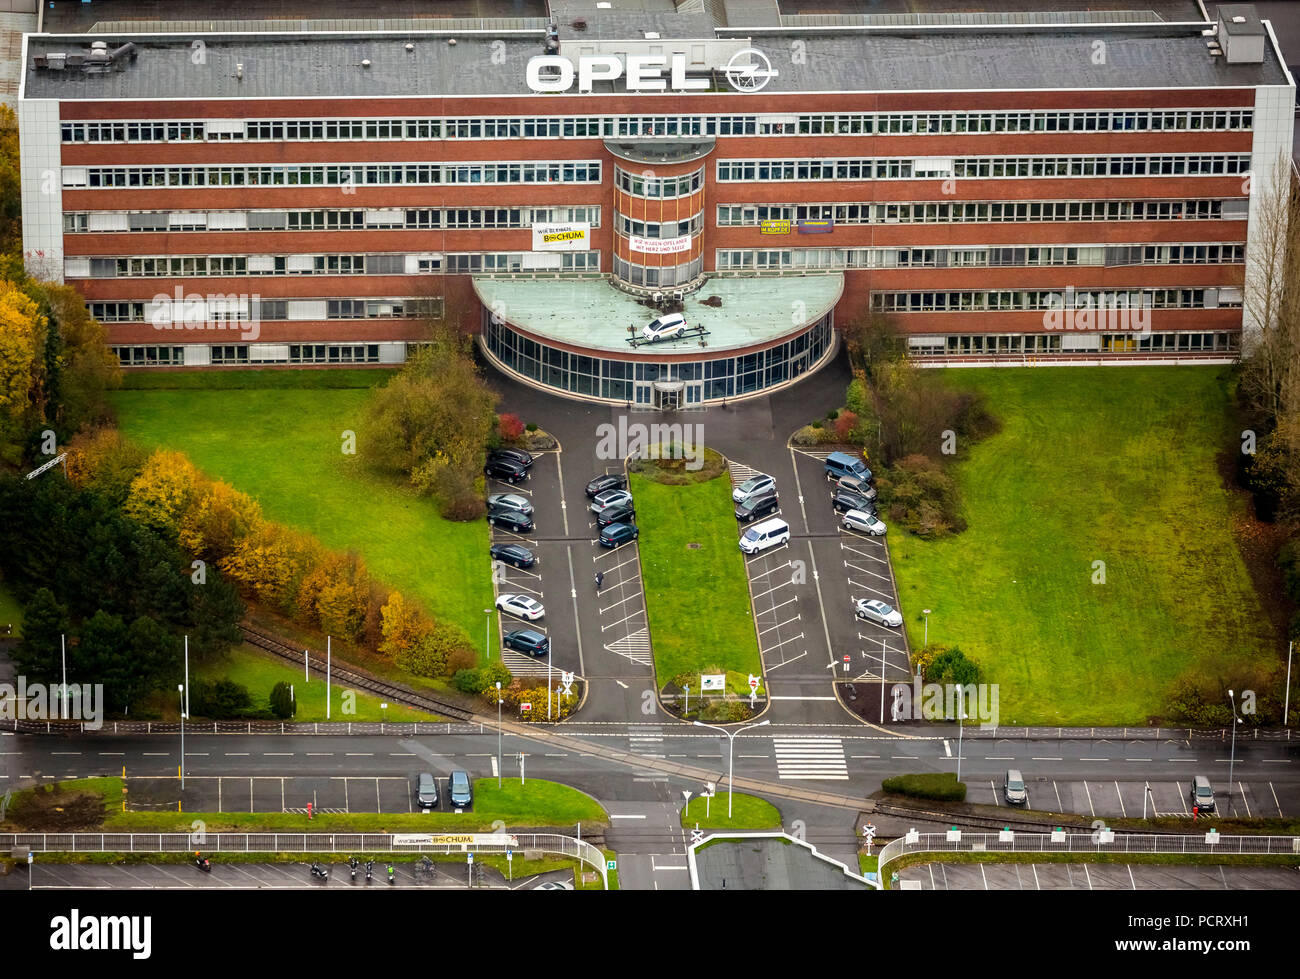 Edificio de administración de Opel es discutido para convertirse en un monumento, un banner con la frase "Wir waren OPELaner mit Herz und Seele', el inminente cierre de la planta de Opel en Bochum, districto de Ruhr, Renania del Norte-Westfalia, Alemania Foto de stock